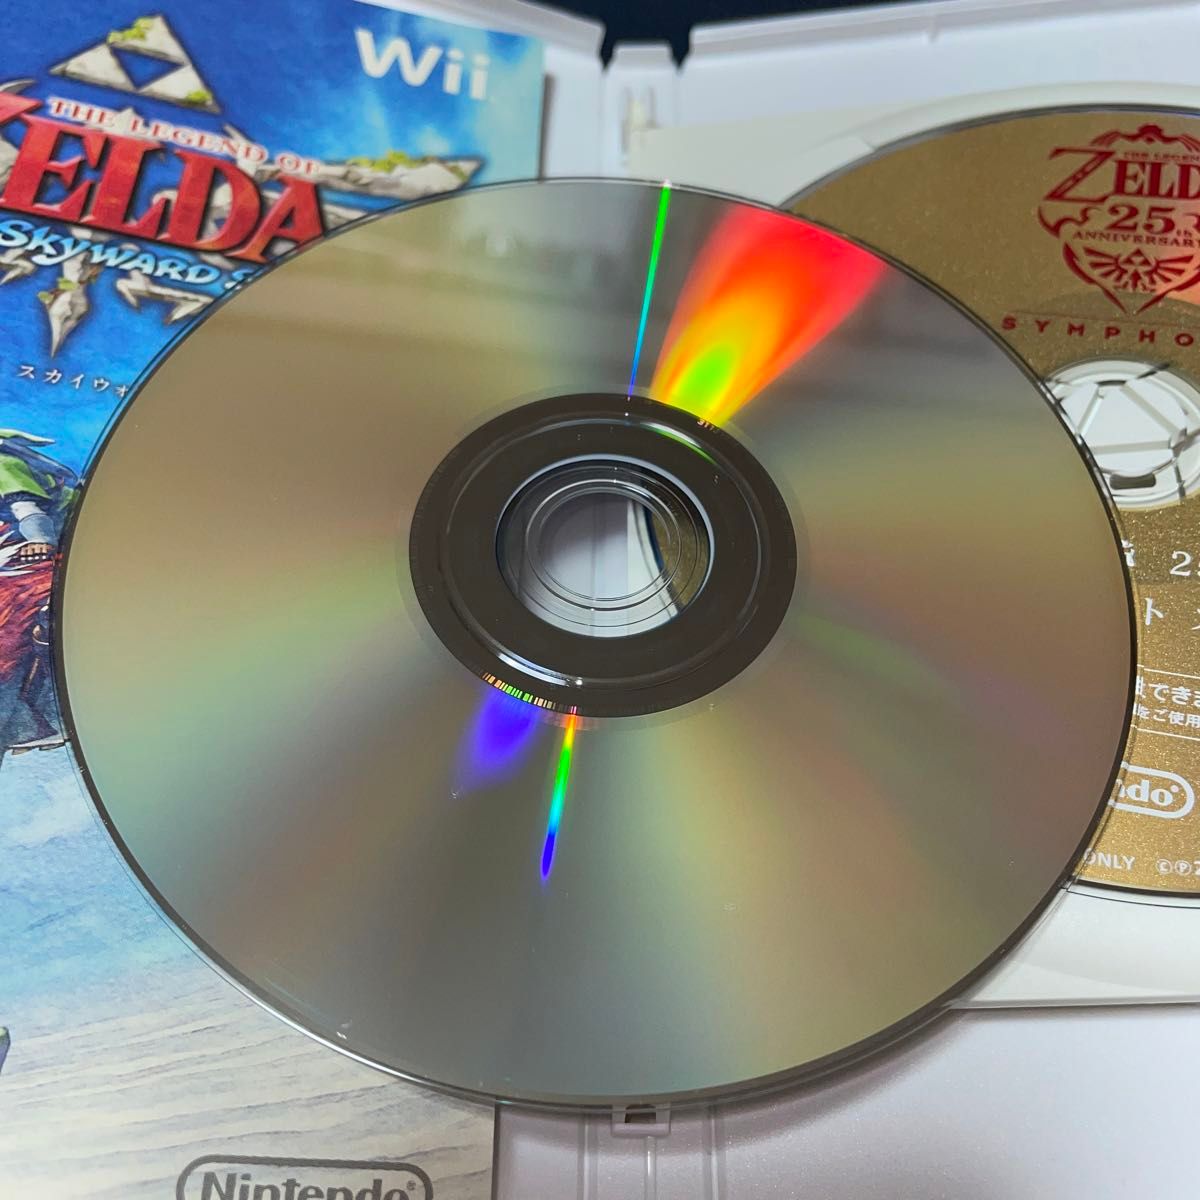 【Wii】 ゼルダの伝説 スカイウォードソード トワイライトプリンセス 2本まとめ セット売り